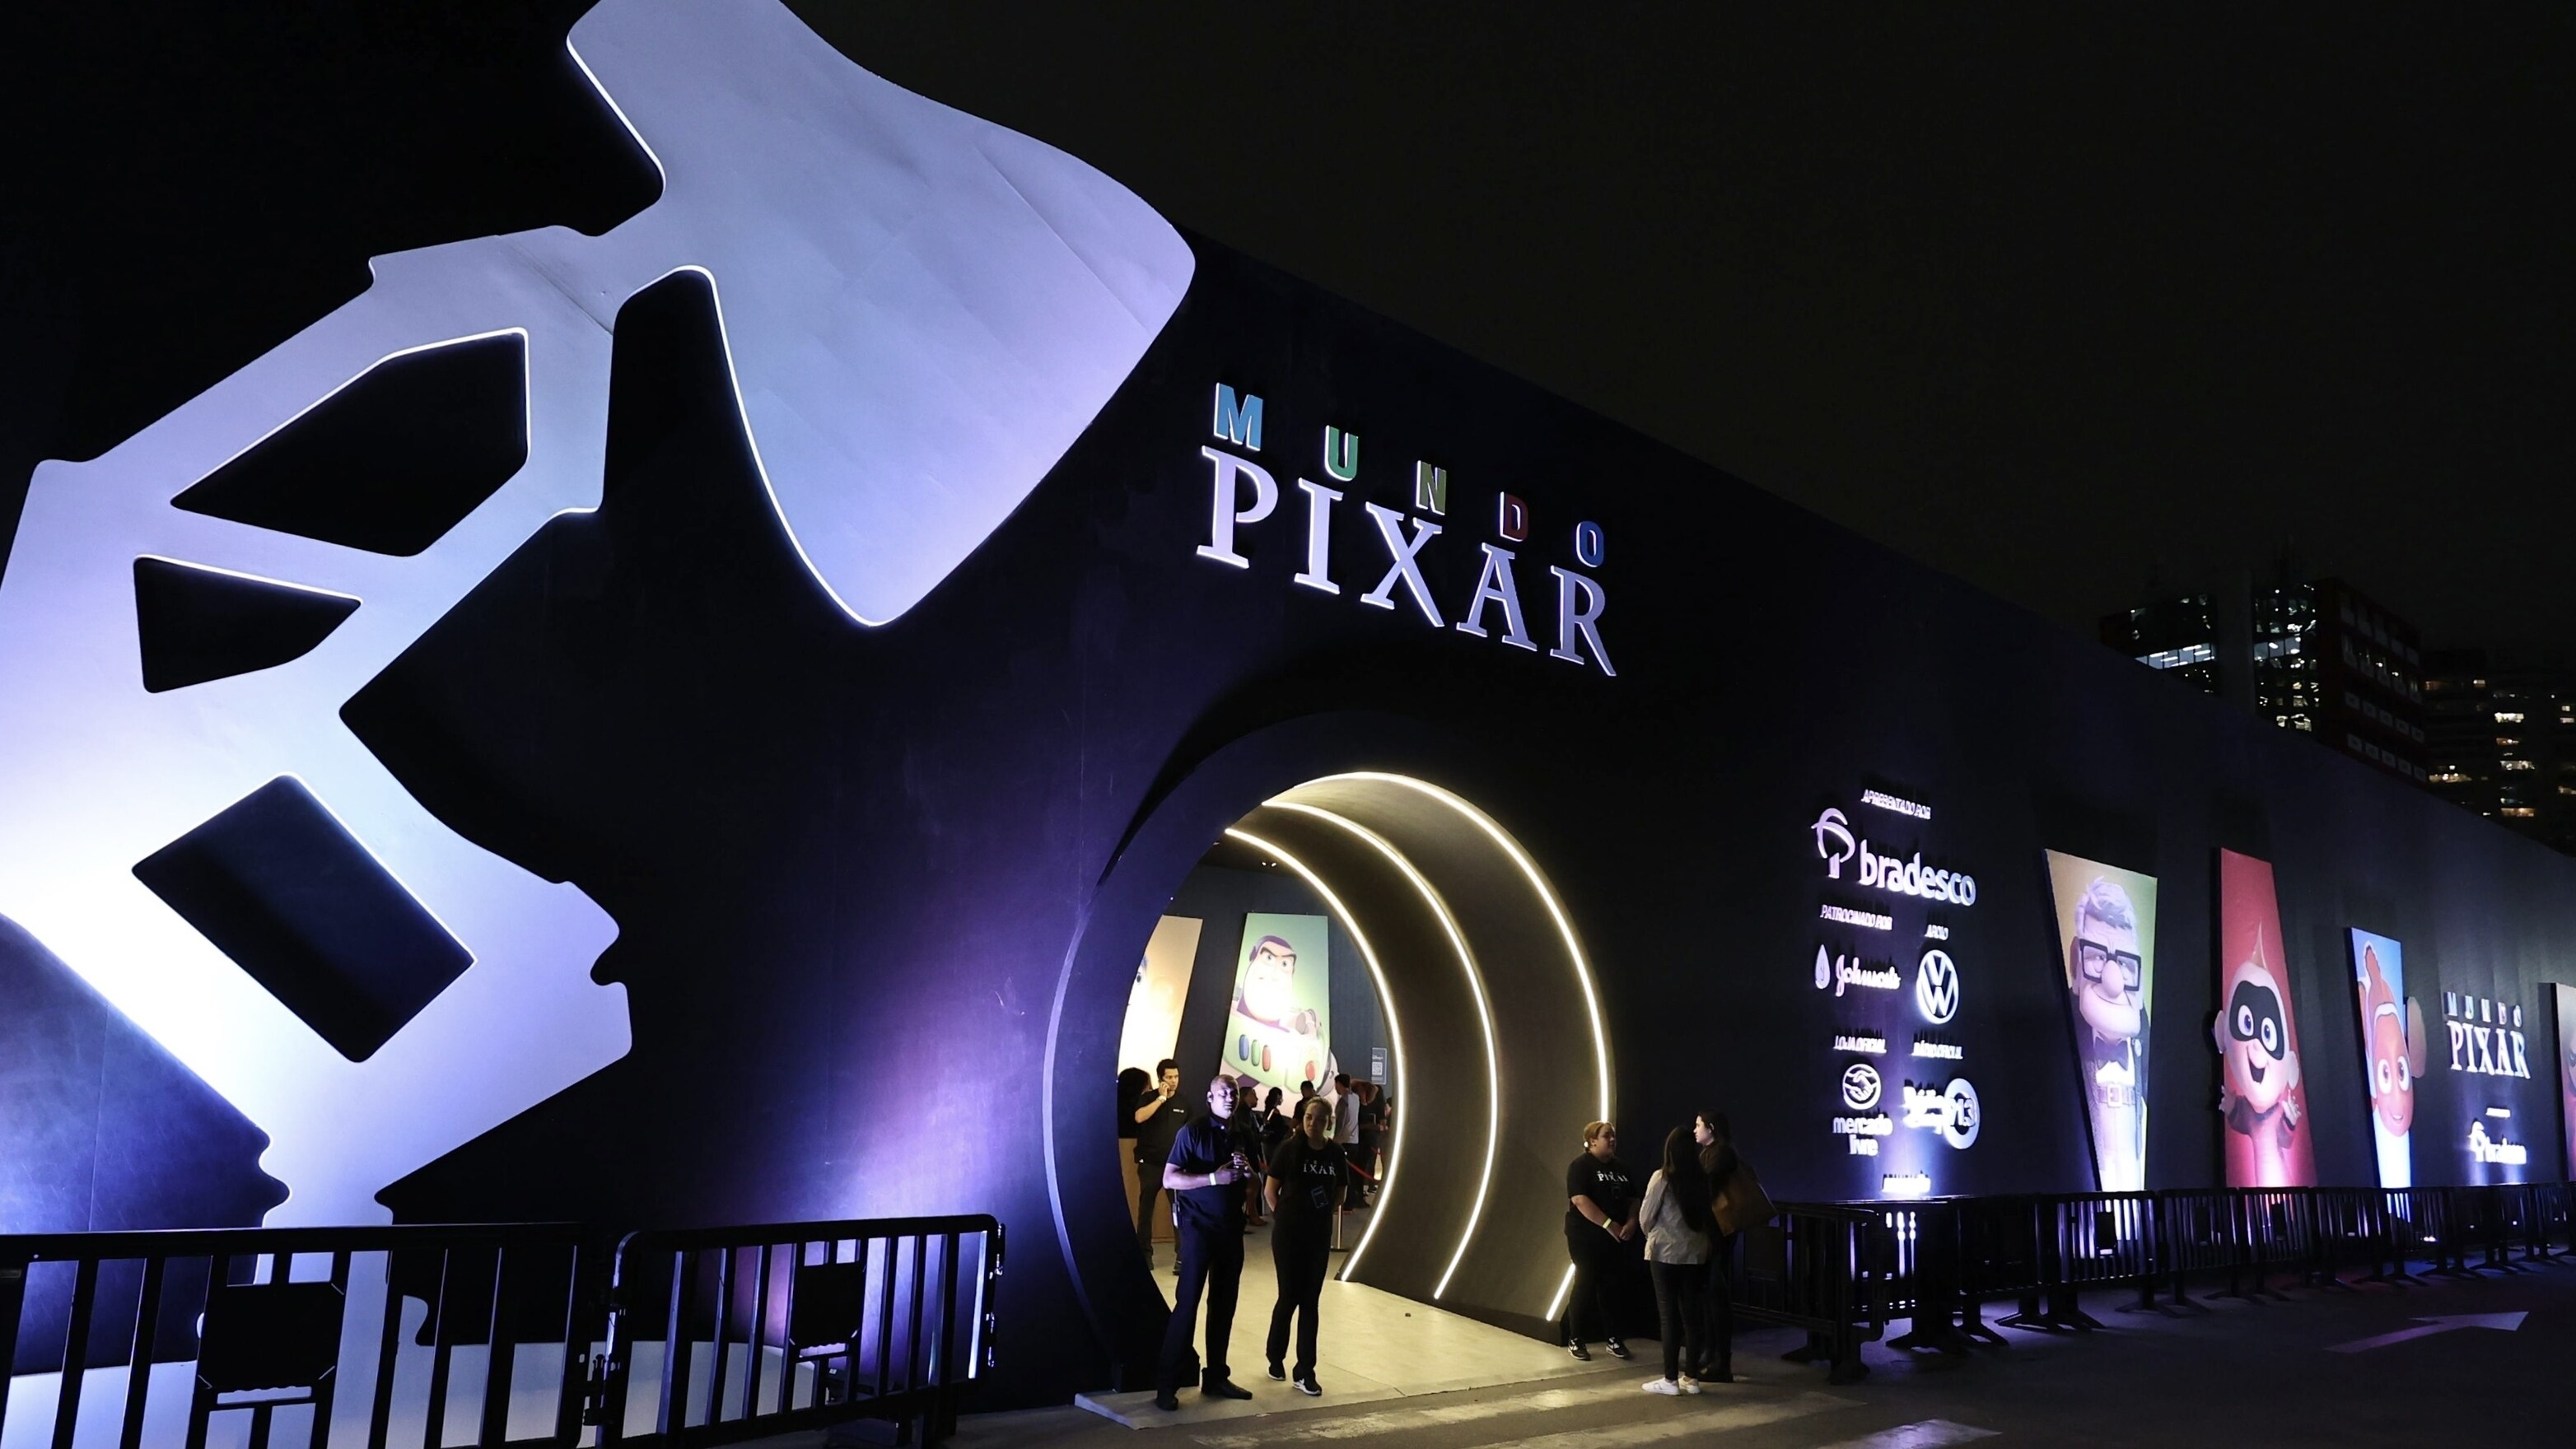 Mundo Pixar: visitamos la exposición inmersiva de Disney y Pixar en São Paulo 